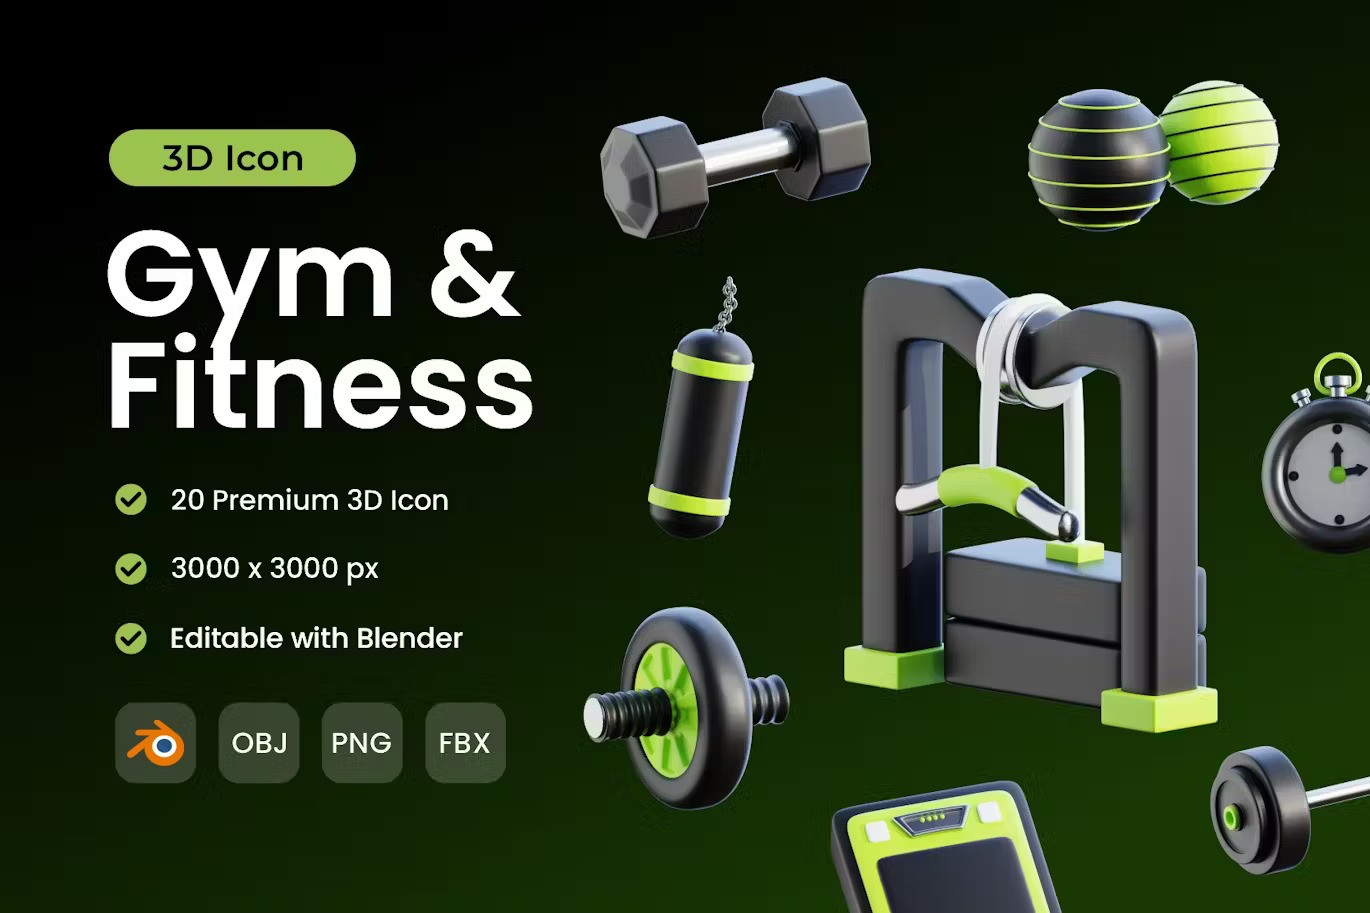 健身房和健身器材 3D 图标包 Gym and Fitness 3D Icon Pack